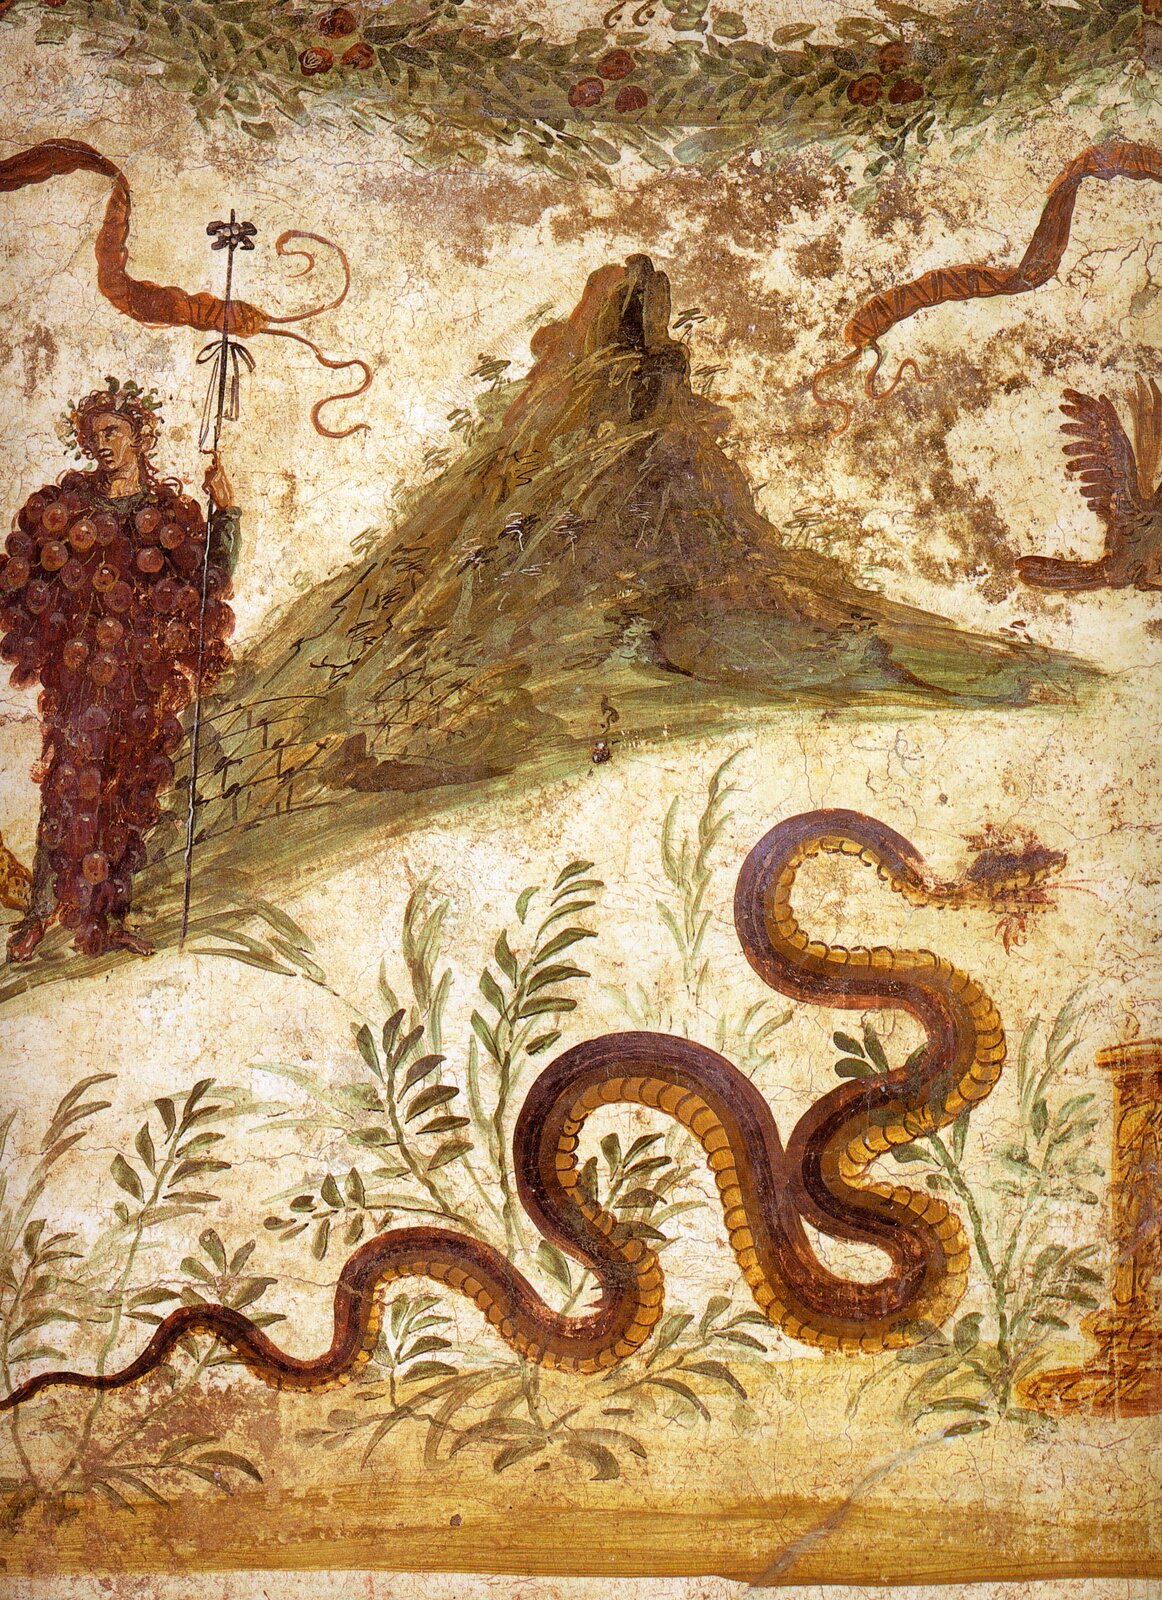 Ilustracja przedstawia obraz „Bachus i wąż” autorstwa Wolfganga Riegera. Obraz ukazuje węża, który pełza po ziemi. Na drugim planie widoczna jest postać Bachusa w bordowej szacie przypominającej wyglądem kiść winogrona. Postać w prawej dłoni trzyma wysoki, cienki przedmiot.  W tle widoczna jest góra.